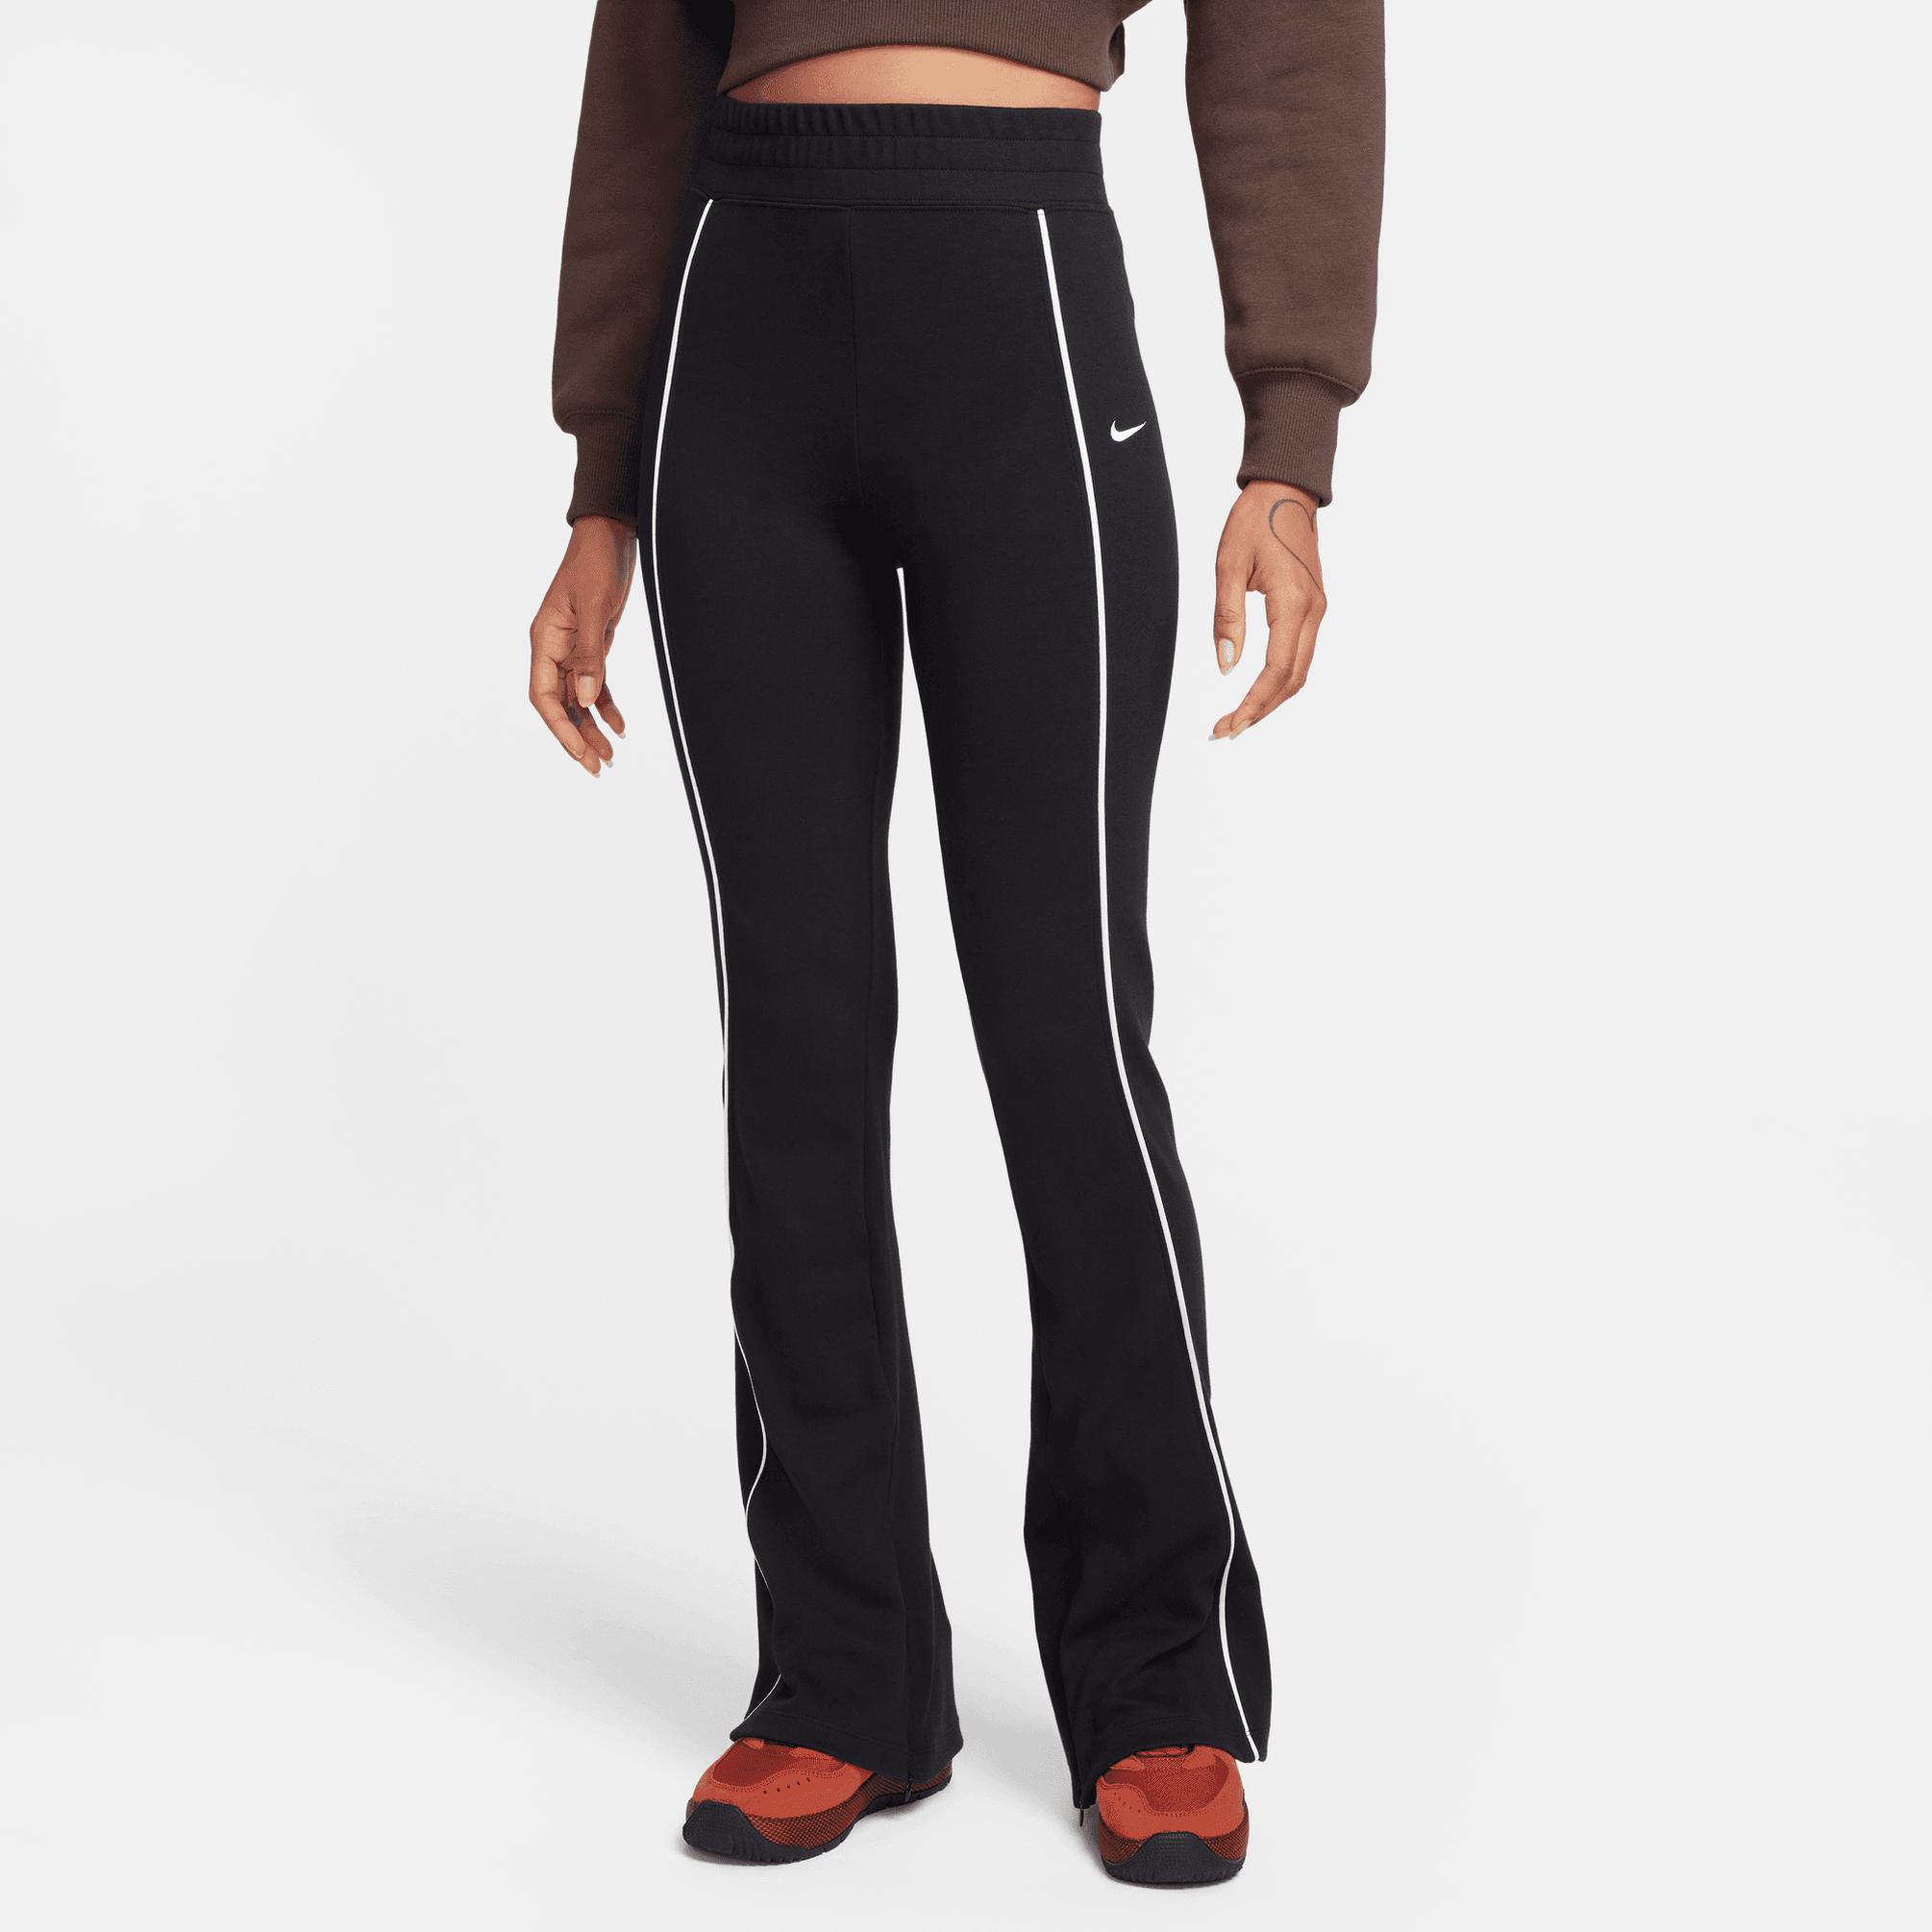  Nike Sportswear Collection Kadın Siyah Eşofman Altı